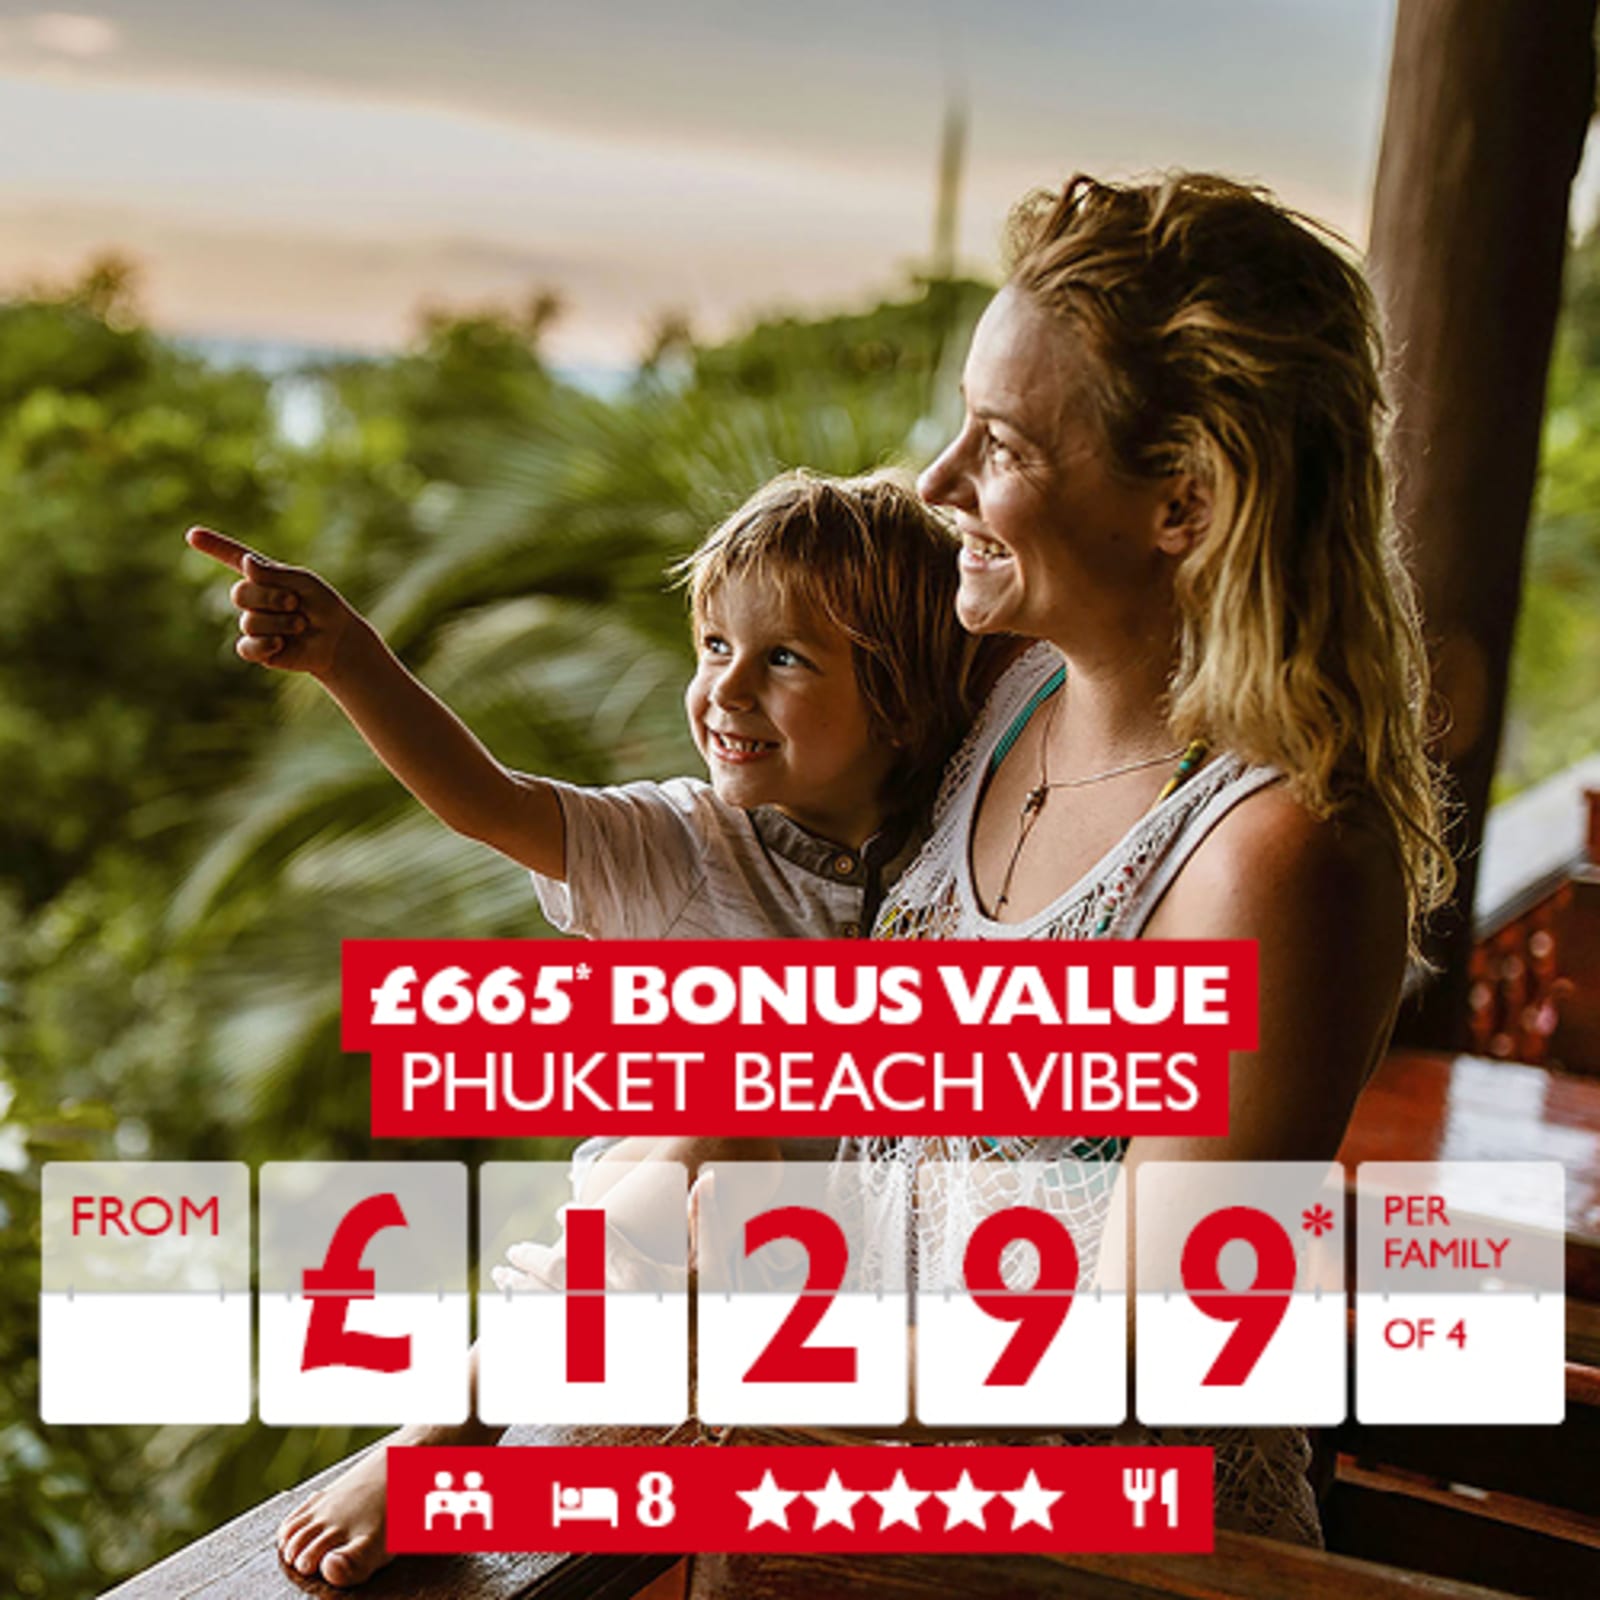 £665* bonus value Phuket Beach Vibes from £1299* per family of 4 